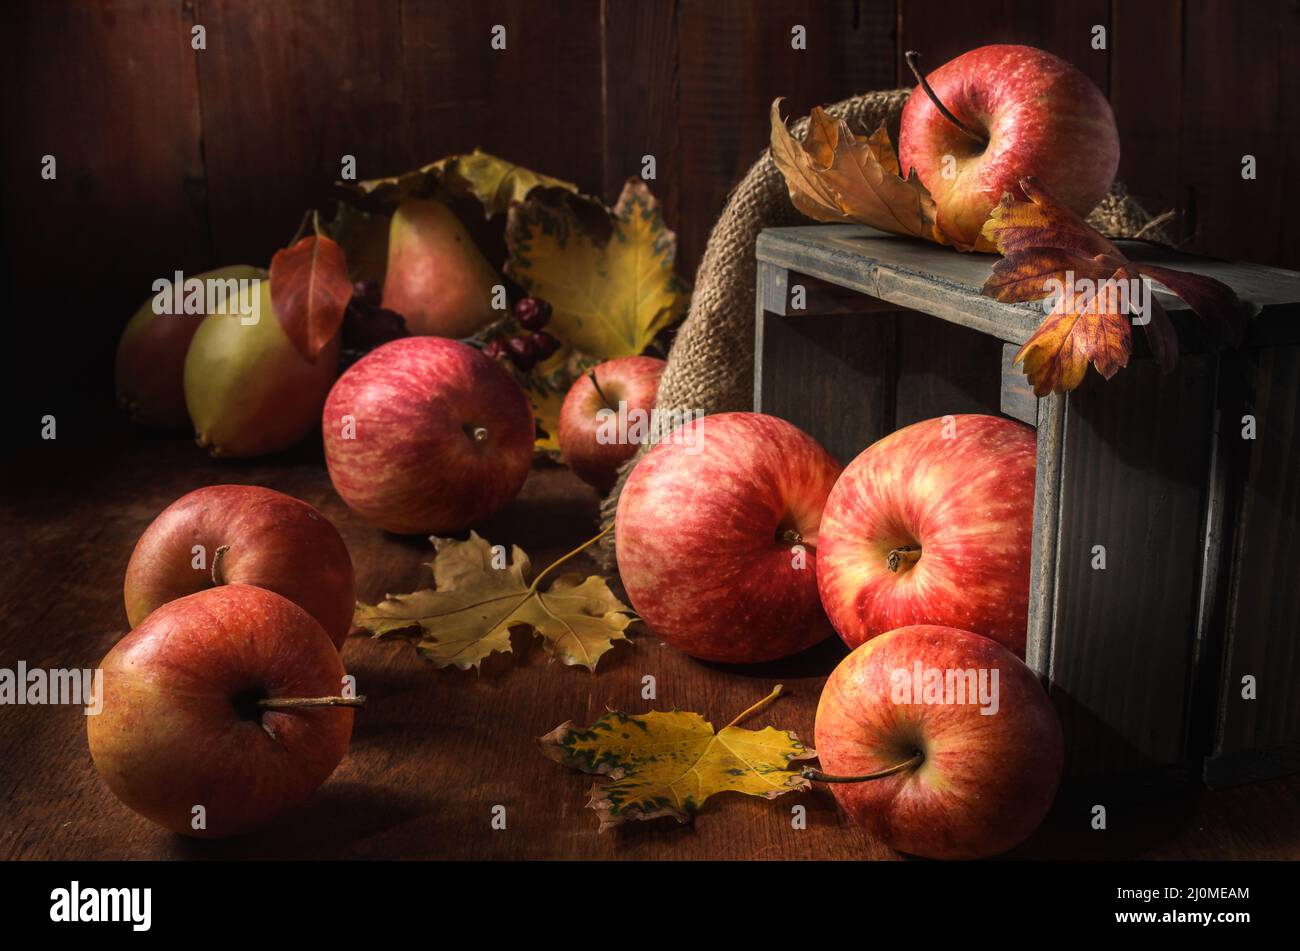 Apples in bulk Stock Photo